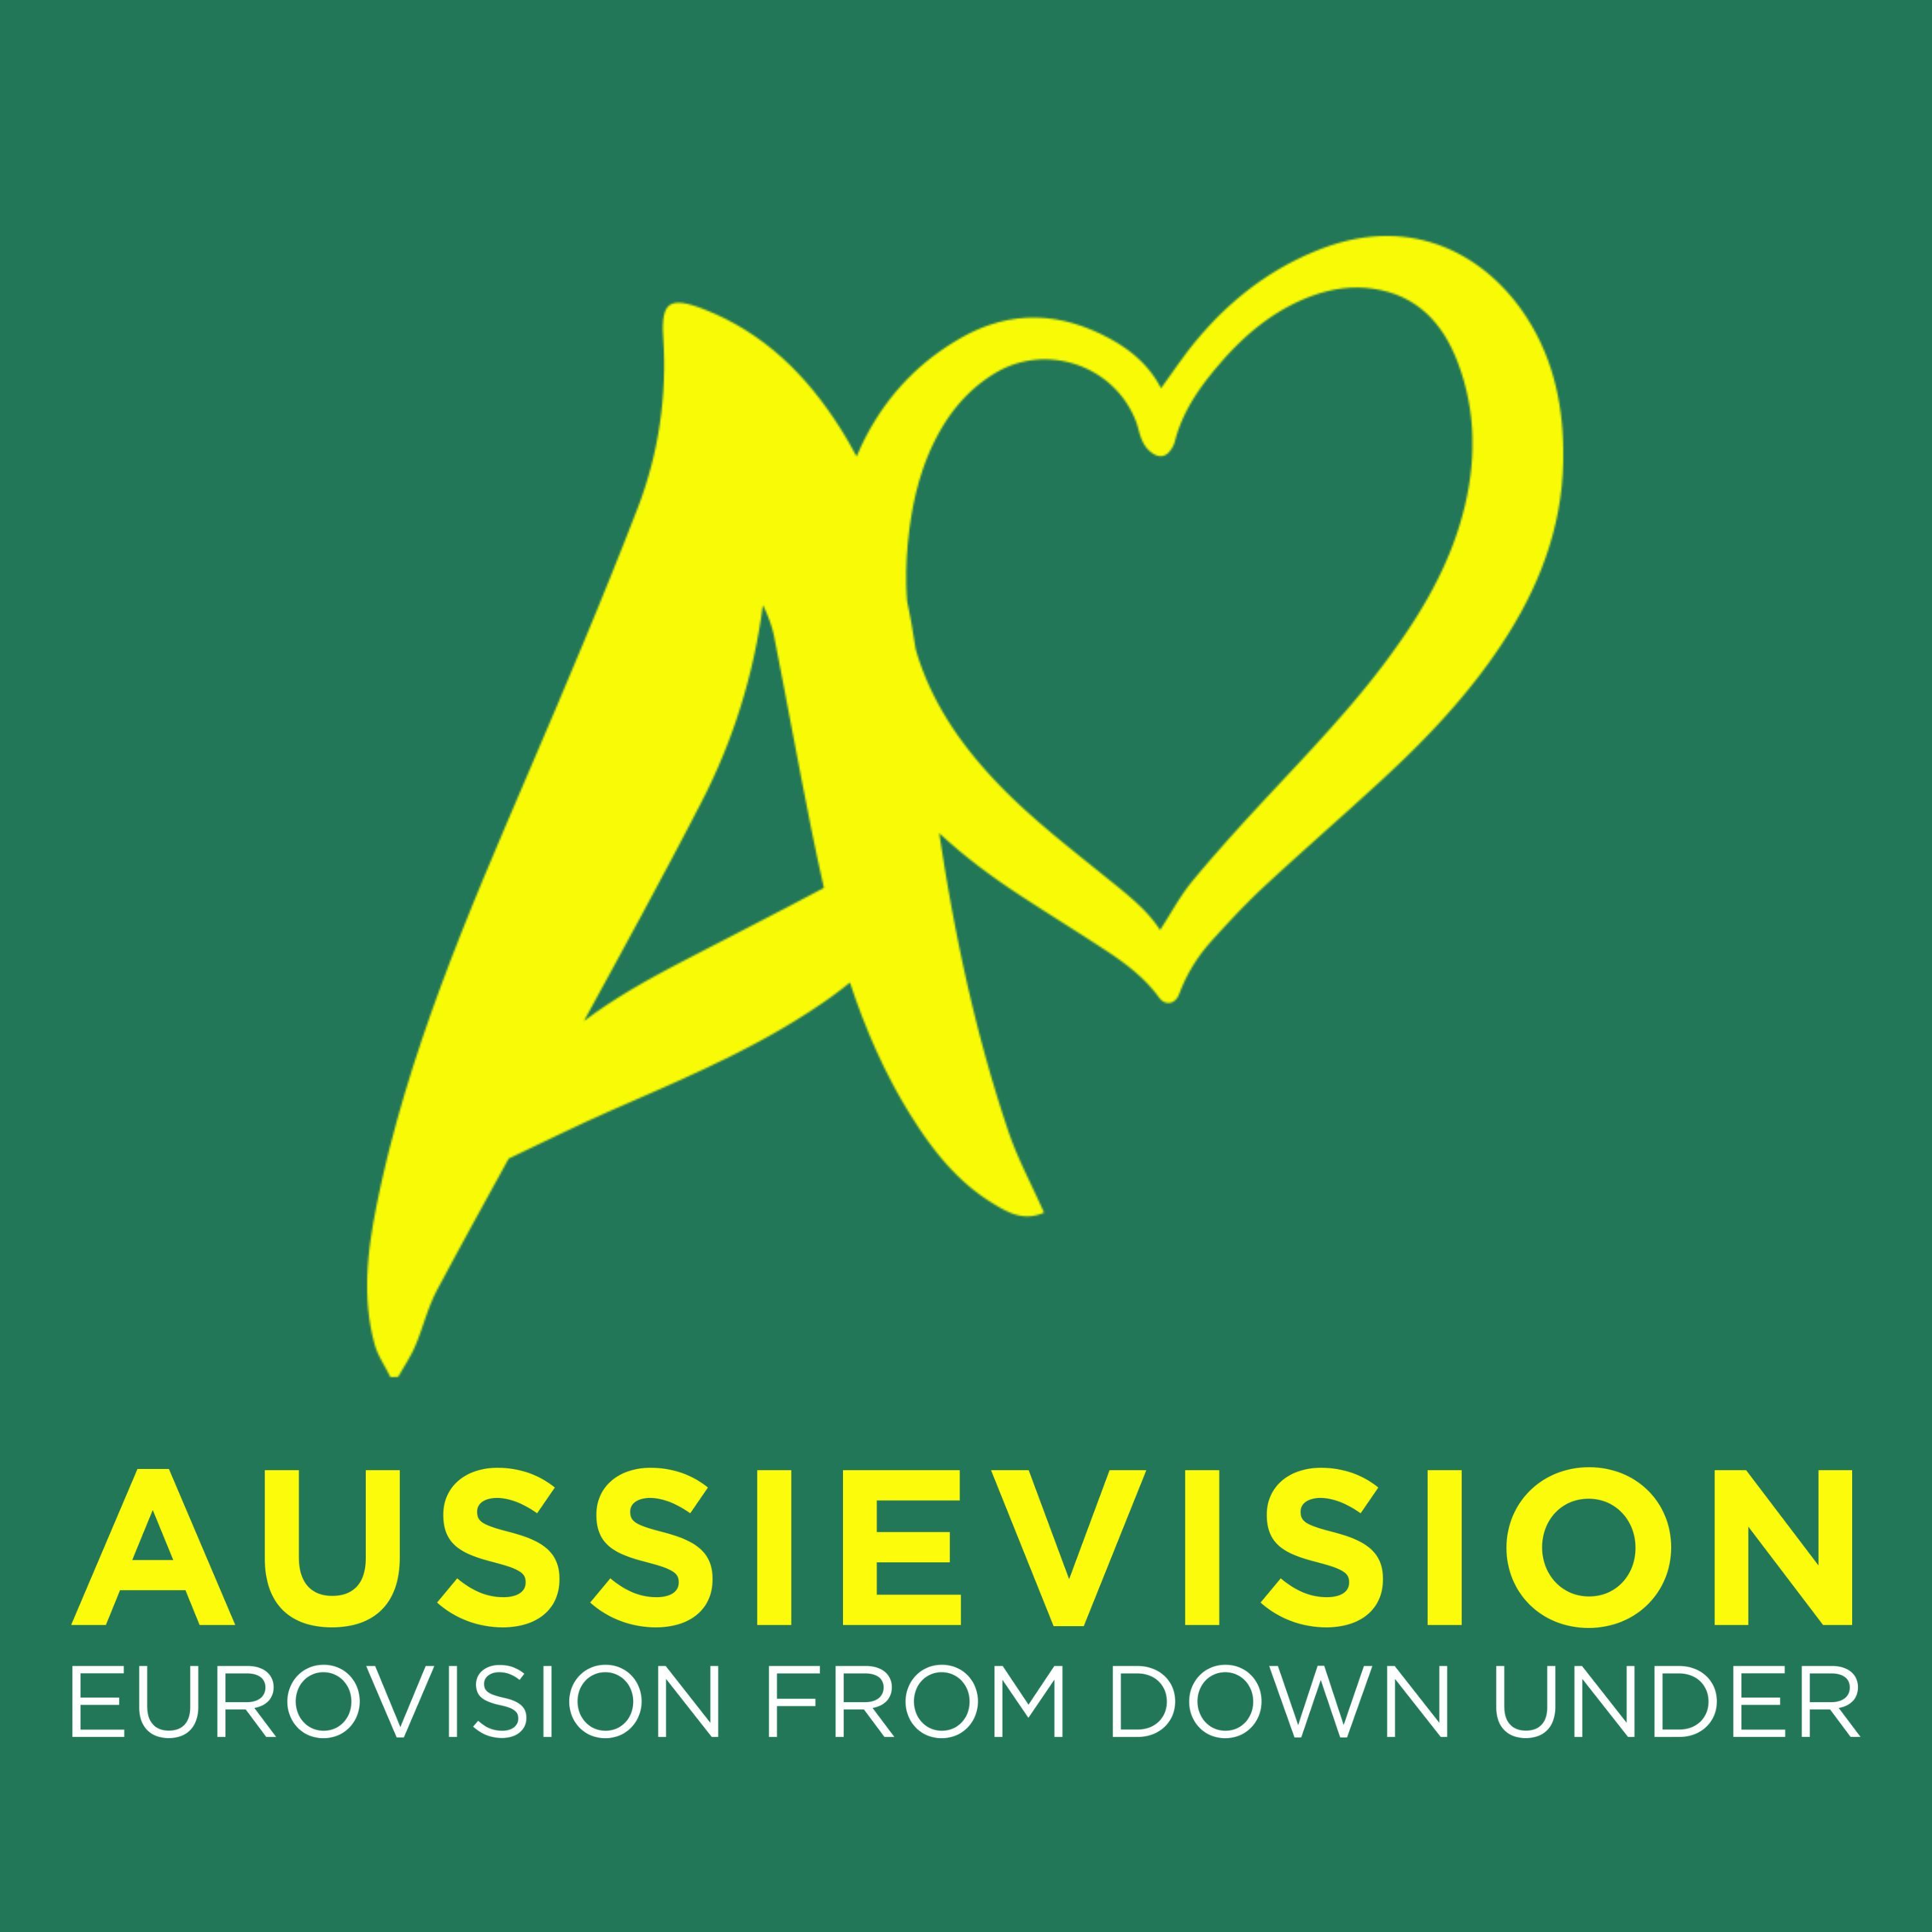 Aussievision - Eurovision from Down Under